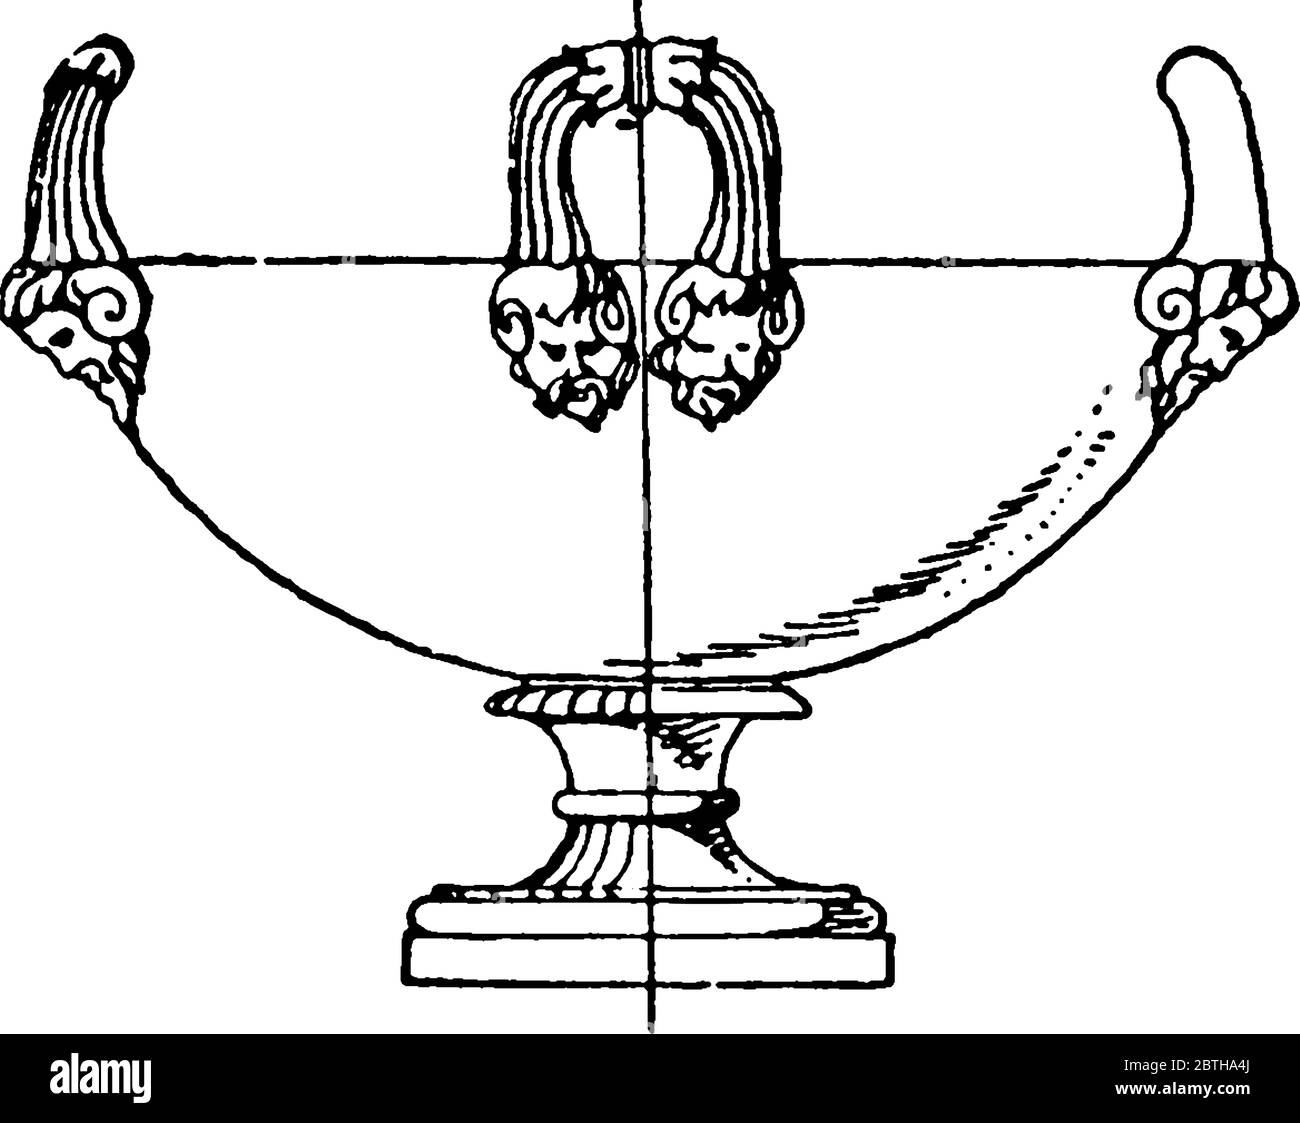 L'antico krater trovato a Tivoli, in Inghilterra, è stato tipicamente utilizzato per mescolare acqua e vino, disegno di linea d'annata o illustrazione di incisione. Illustrazione Vettoriale